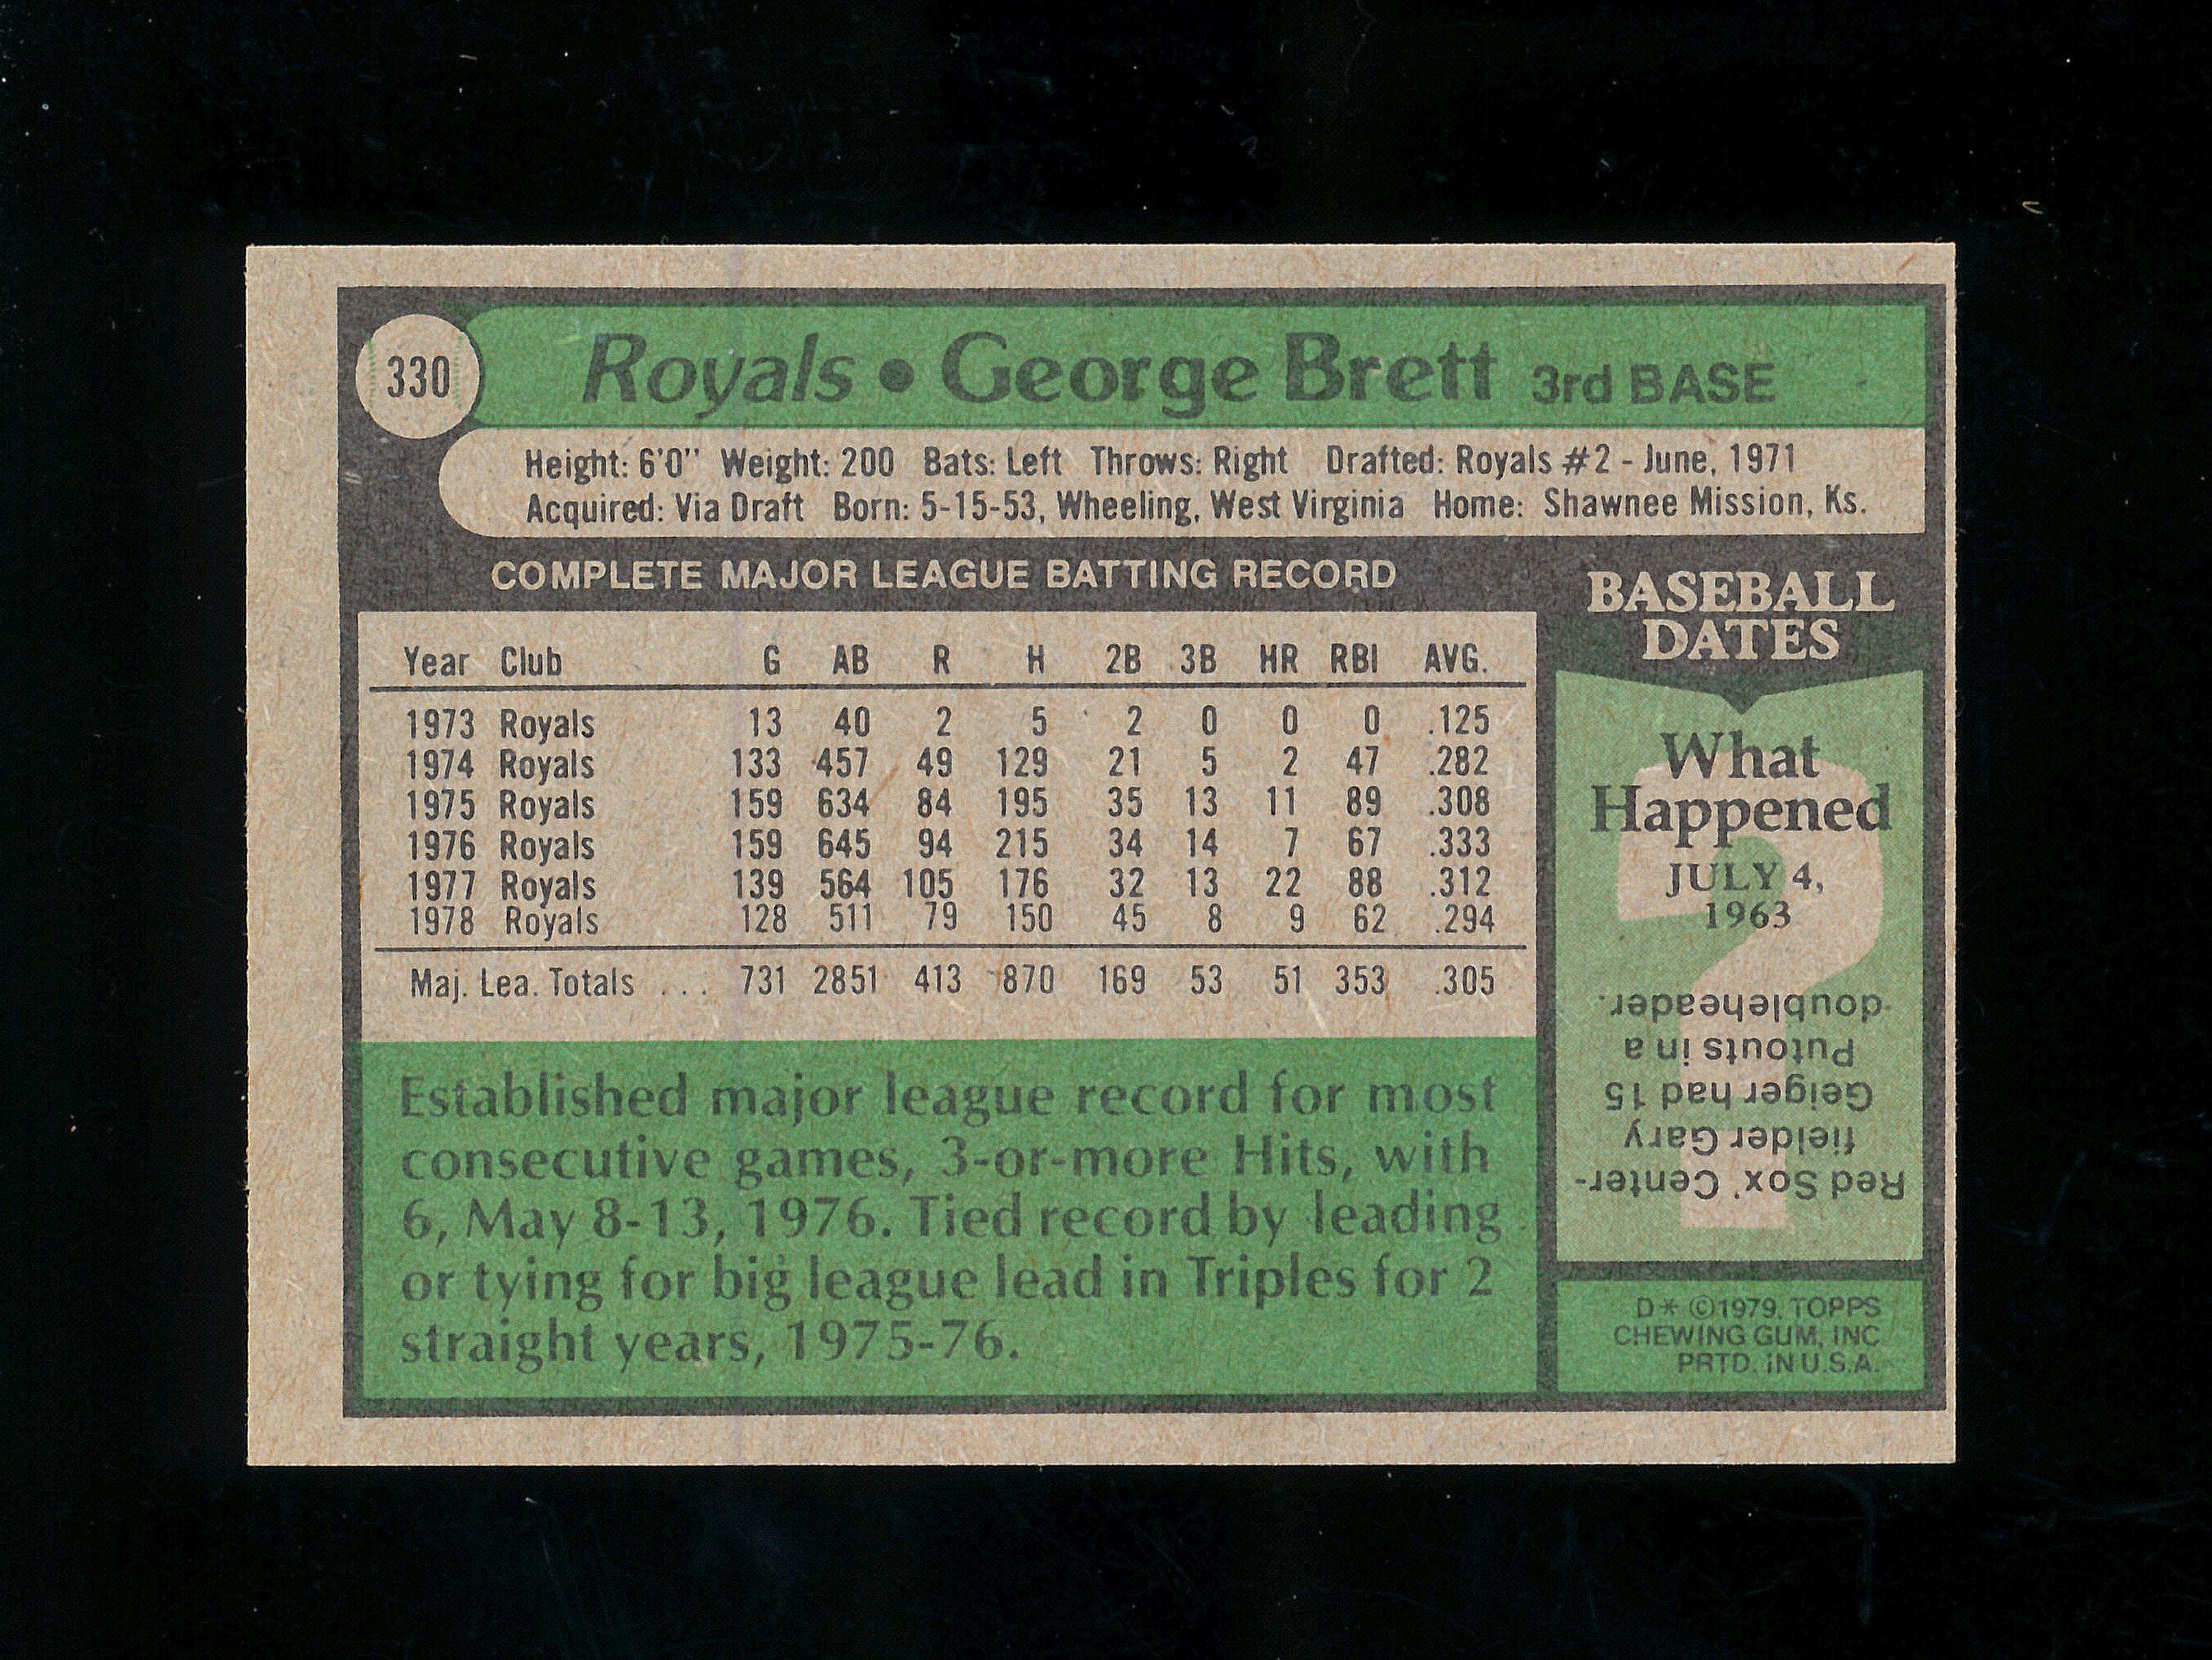 1979 Topps Baseball Card #330 Hall of Famer George Brett Kansas City Royals